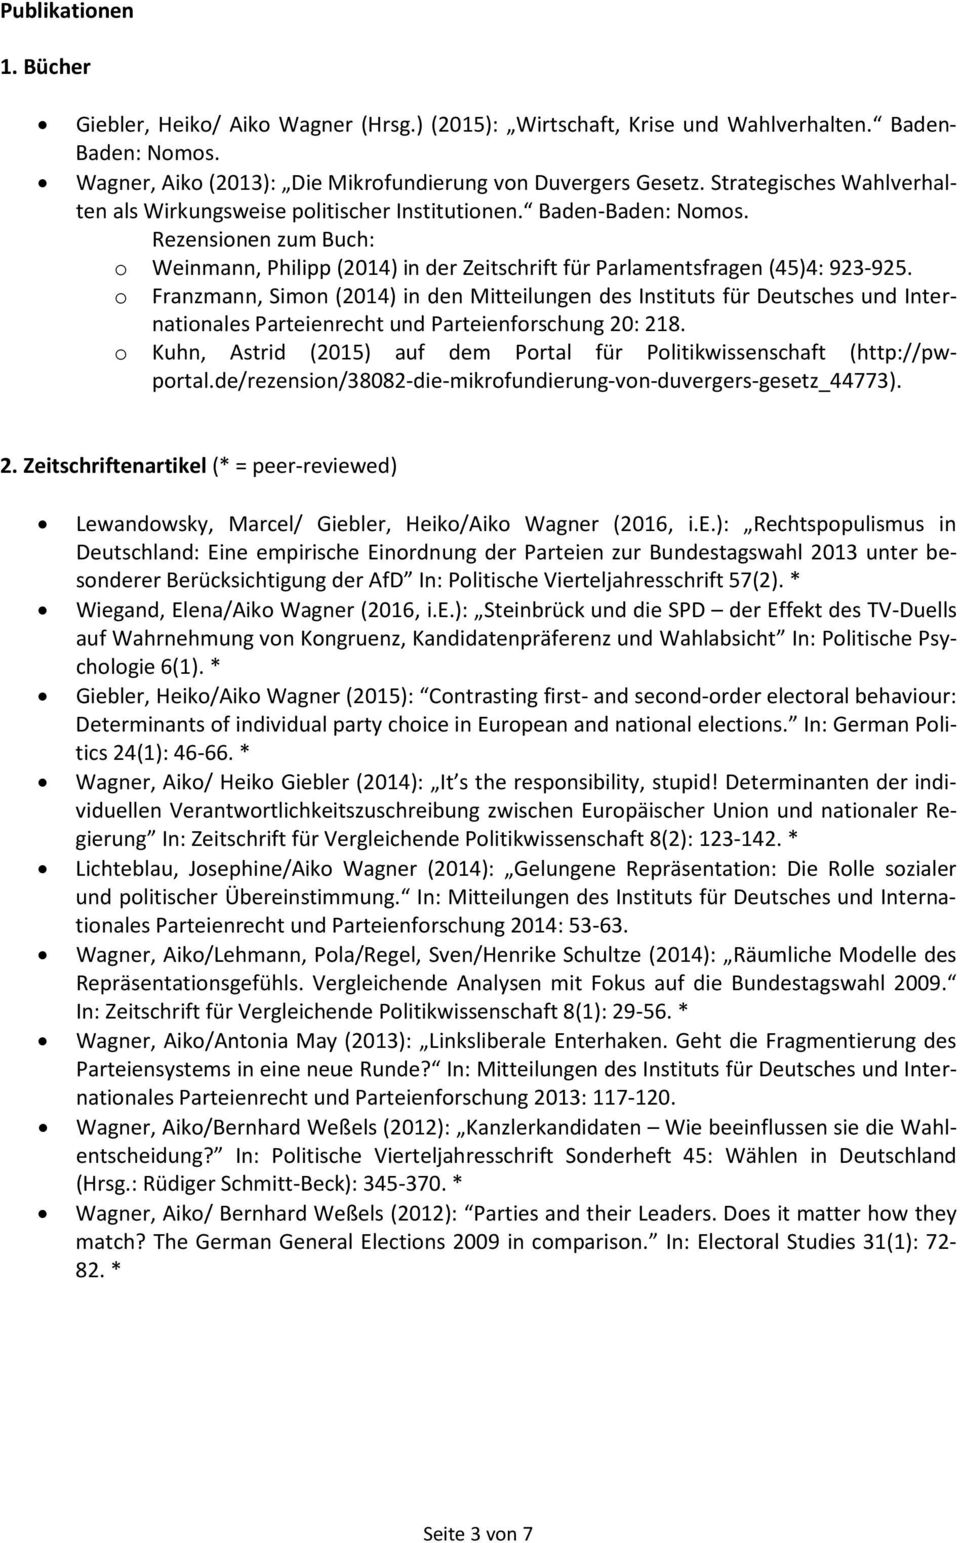 o Franzmann, Simon (2014) in den Mitteilungen des Instituts für Deutsches und Internationales Parteienrecht und Parteienforschung 20: 218.